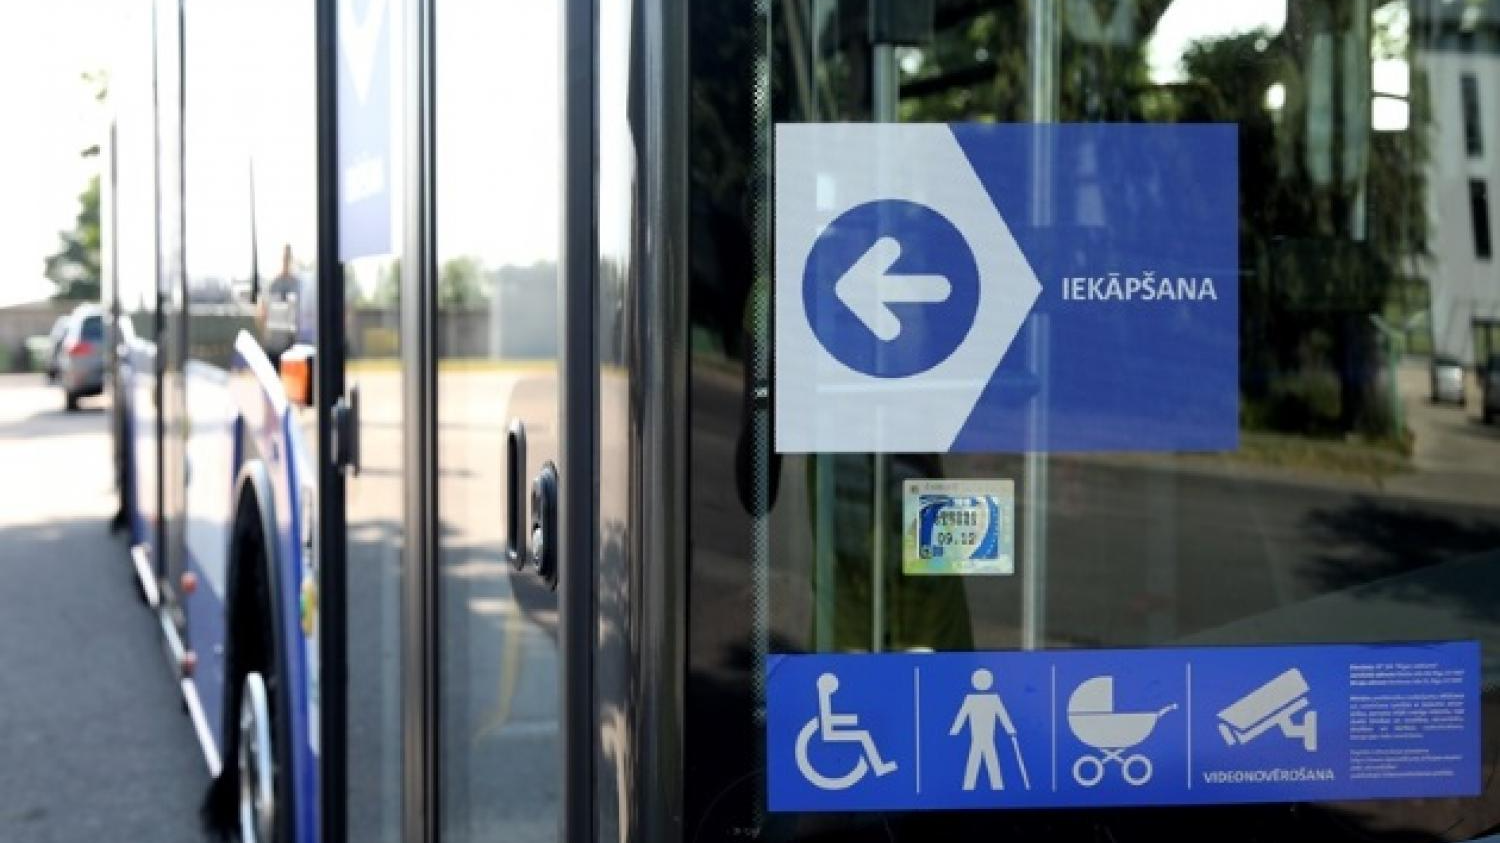 Ārkārtējās situācijas laikā Rīgas pašvaldība izvērtēs braukšanas maksas atvieglojumu nepieciešamību sabiedriskajā transportā